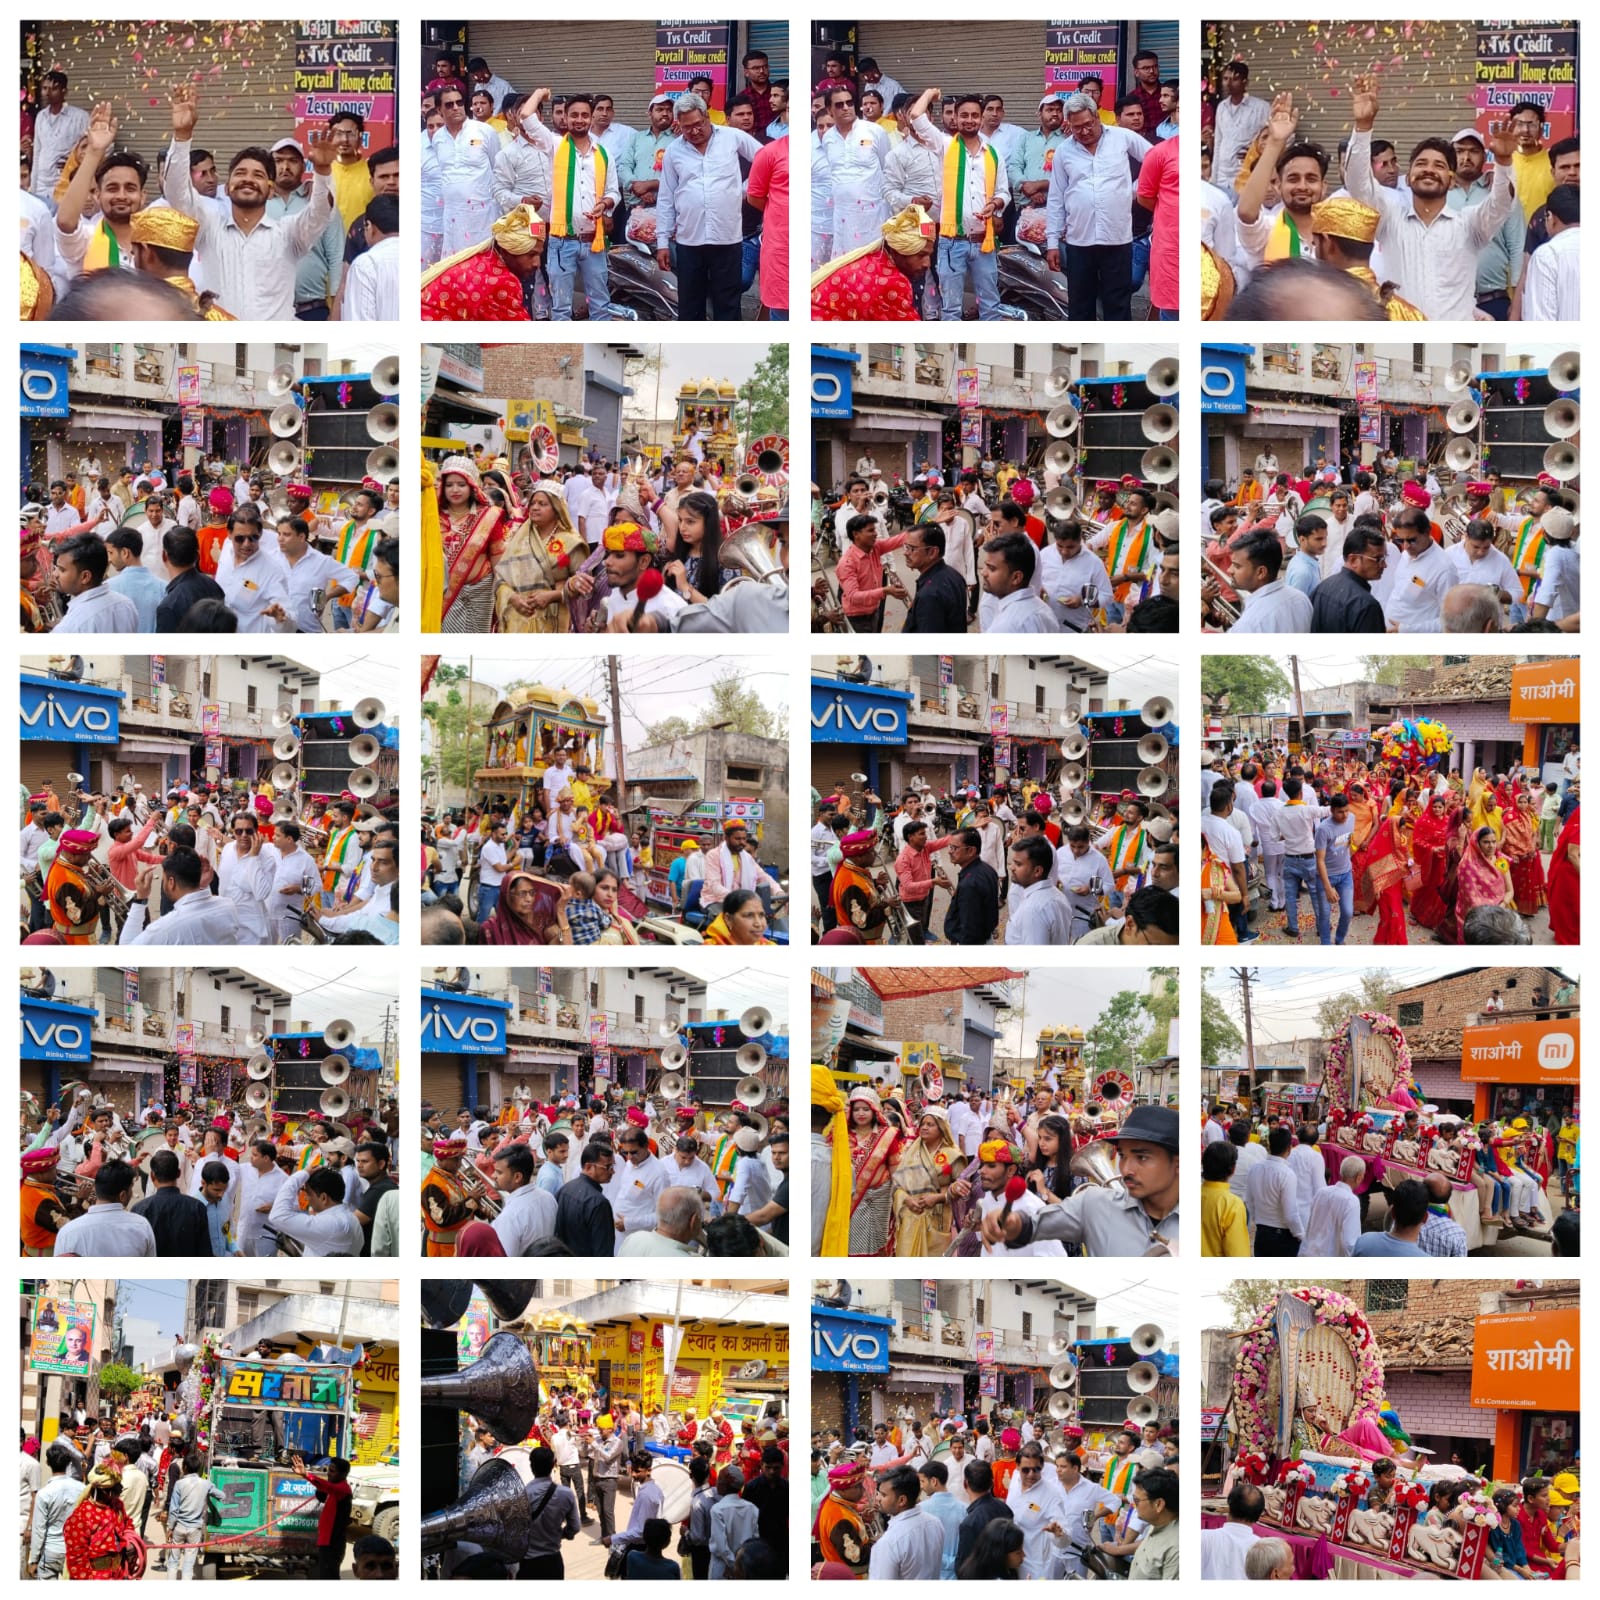 कामां कस्वे में निकाली गई भगवान महावीर जी की शोभायात्रा ,  भाजपा नेता शकील खान के कार्यकर्ताओं ने किया पुष्प वर्षा कर जोरदार स्वागत 